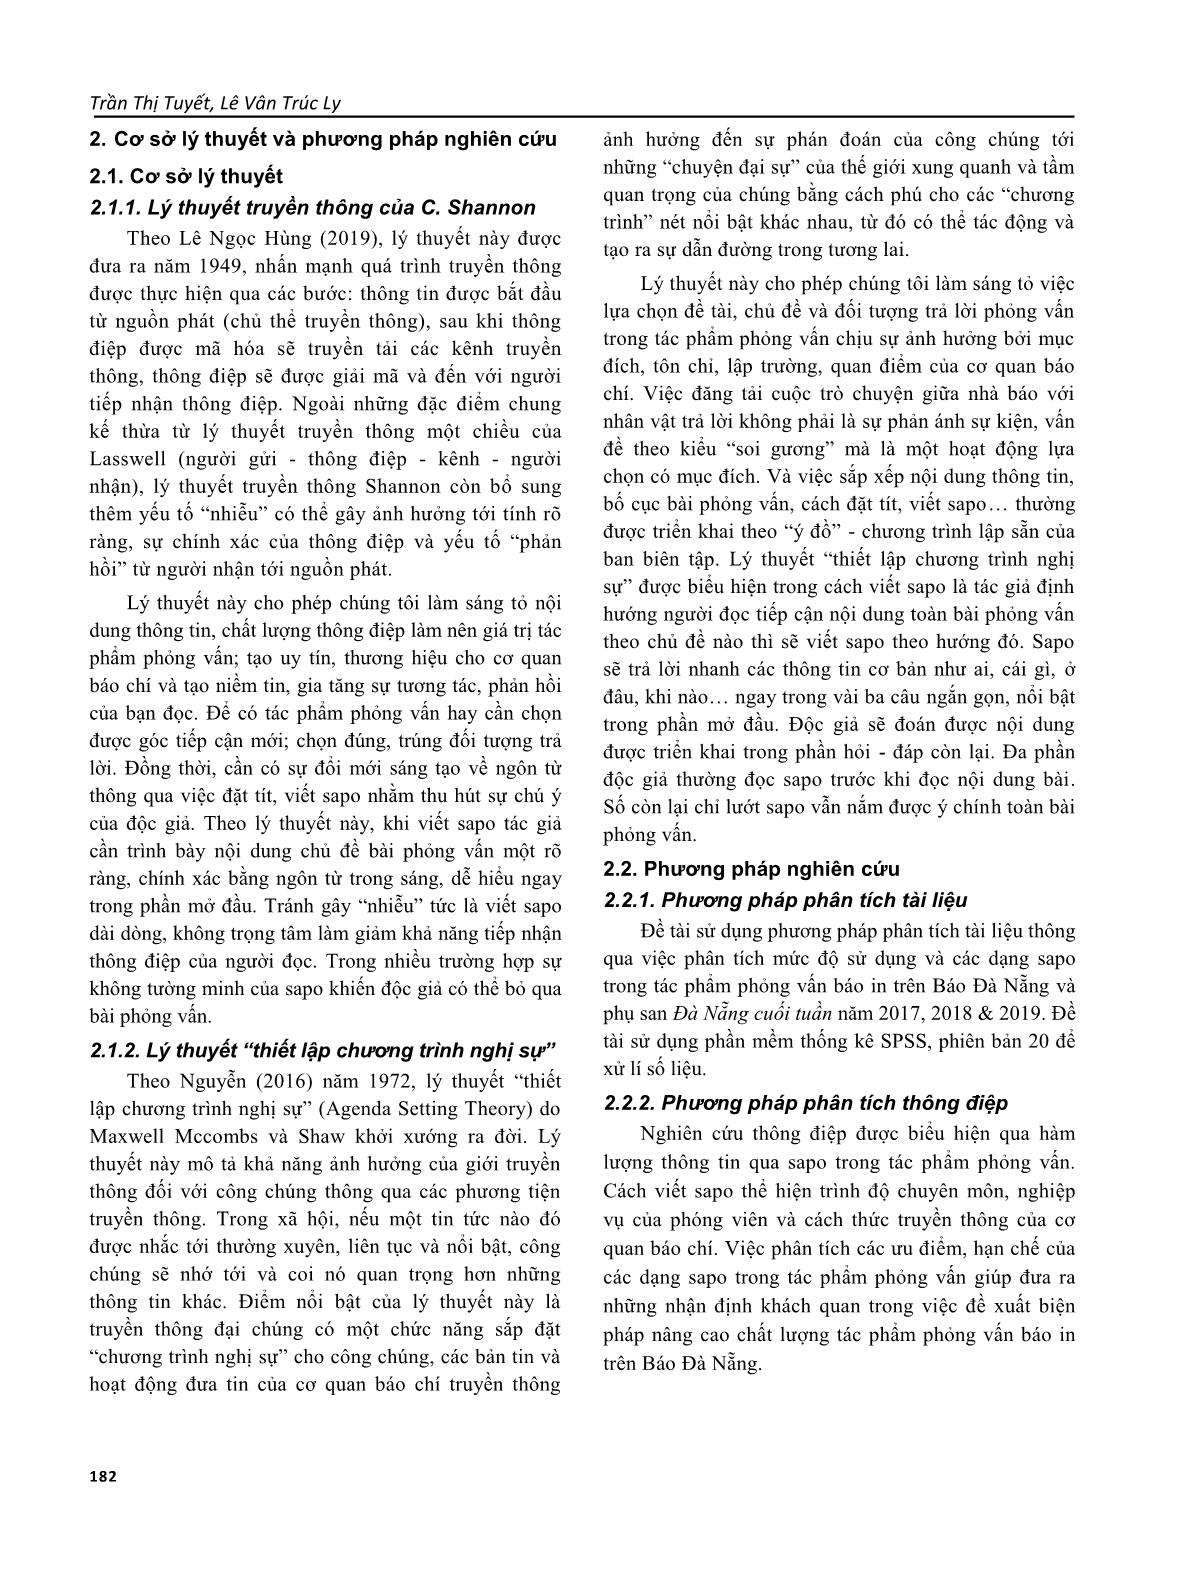 Lời mở đầu (sapo) trong tác phẩm phỏng vấn trên báo Đà Nẵng trang 2